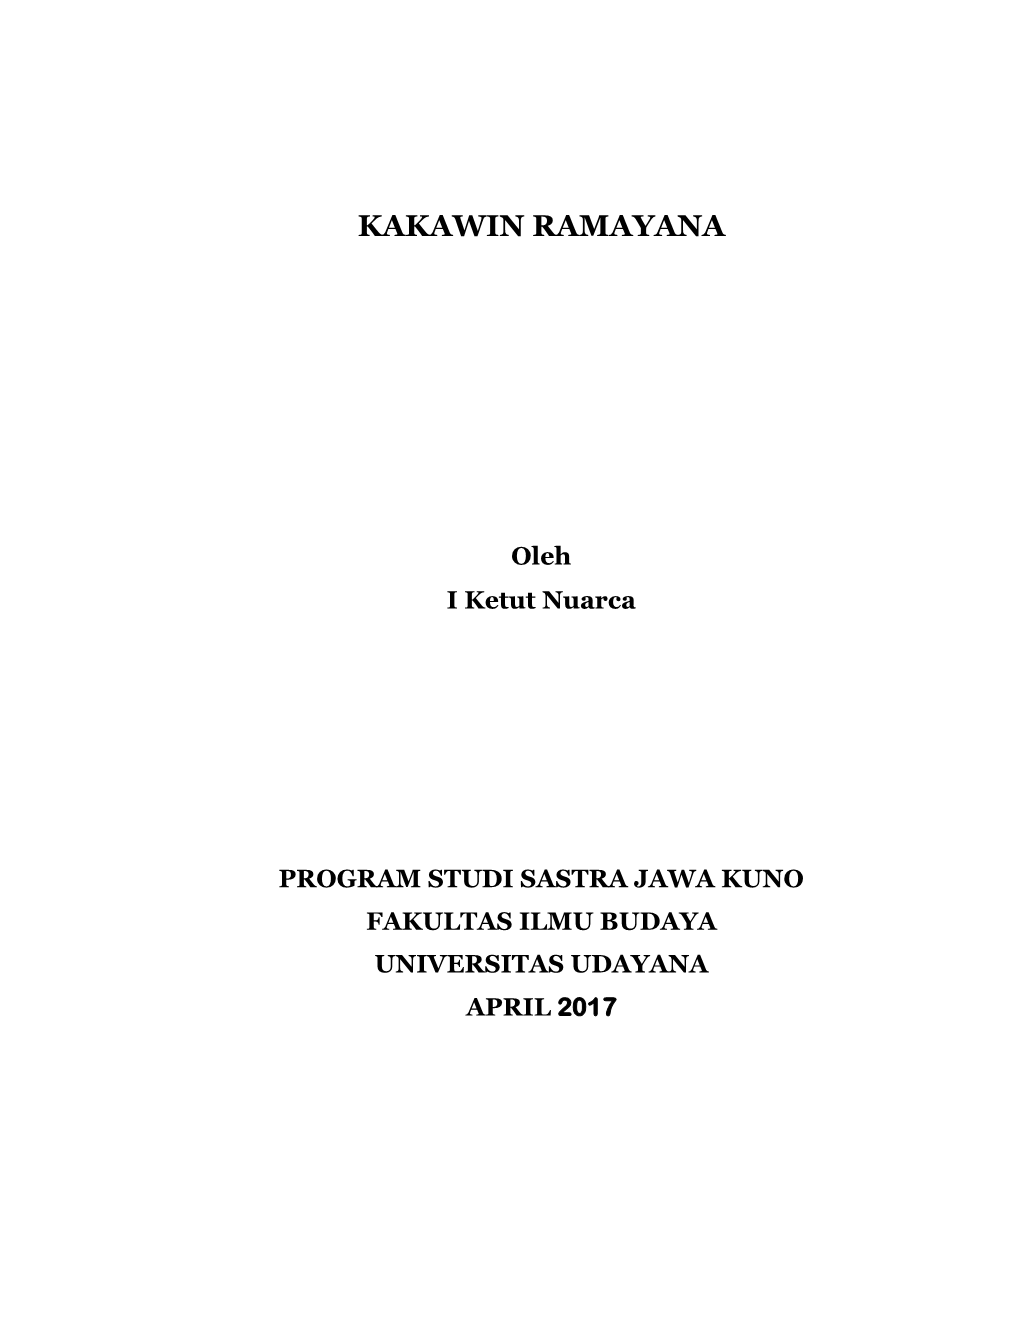 Kakawin Ramayana